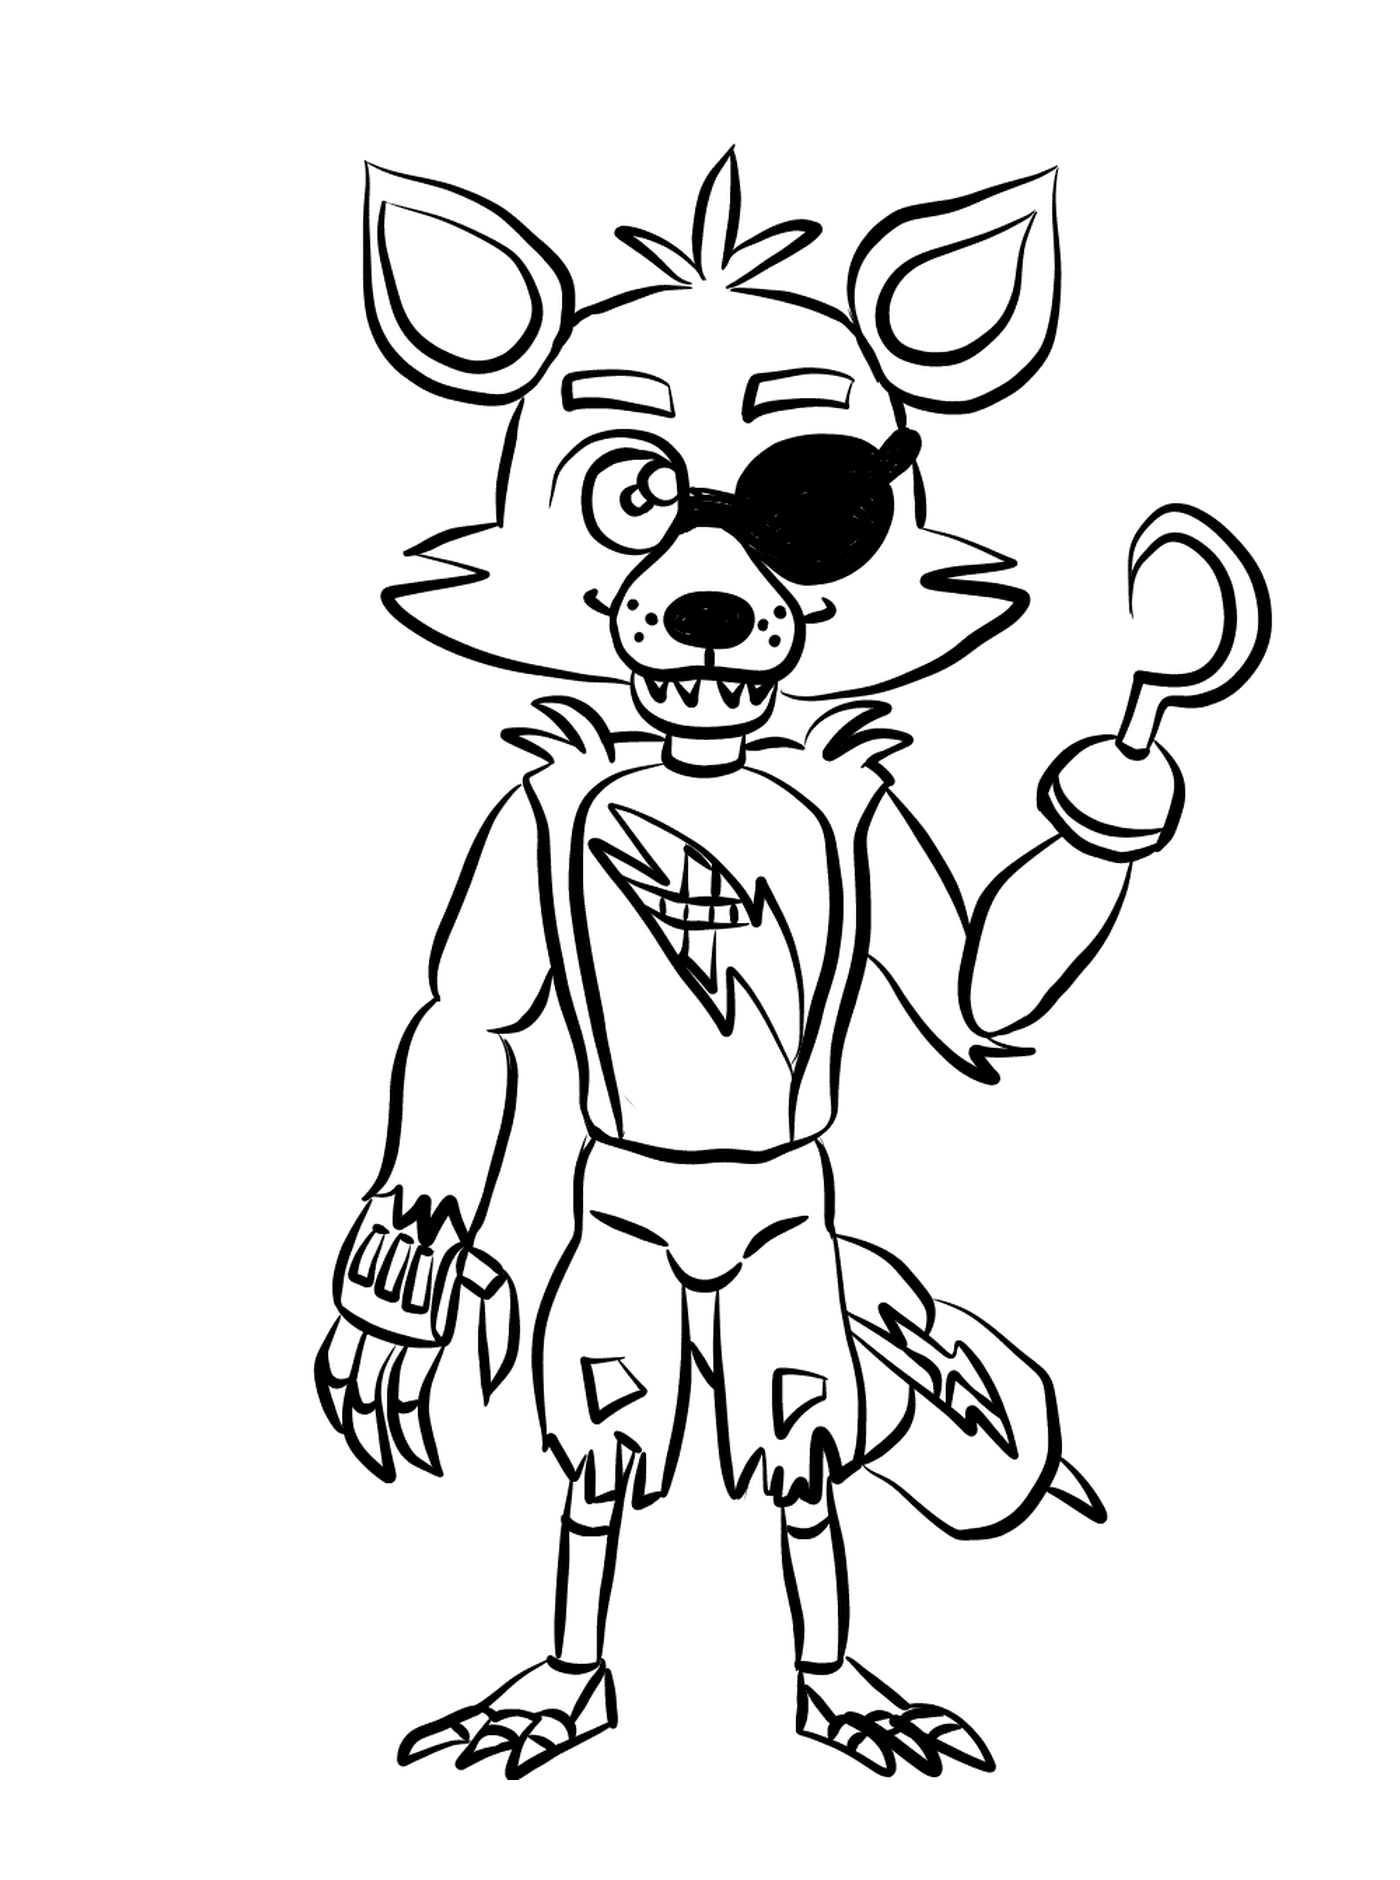  Un personaggio dei cartoni animati che rappresenta Foxy 